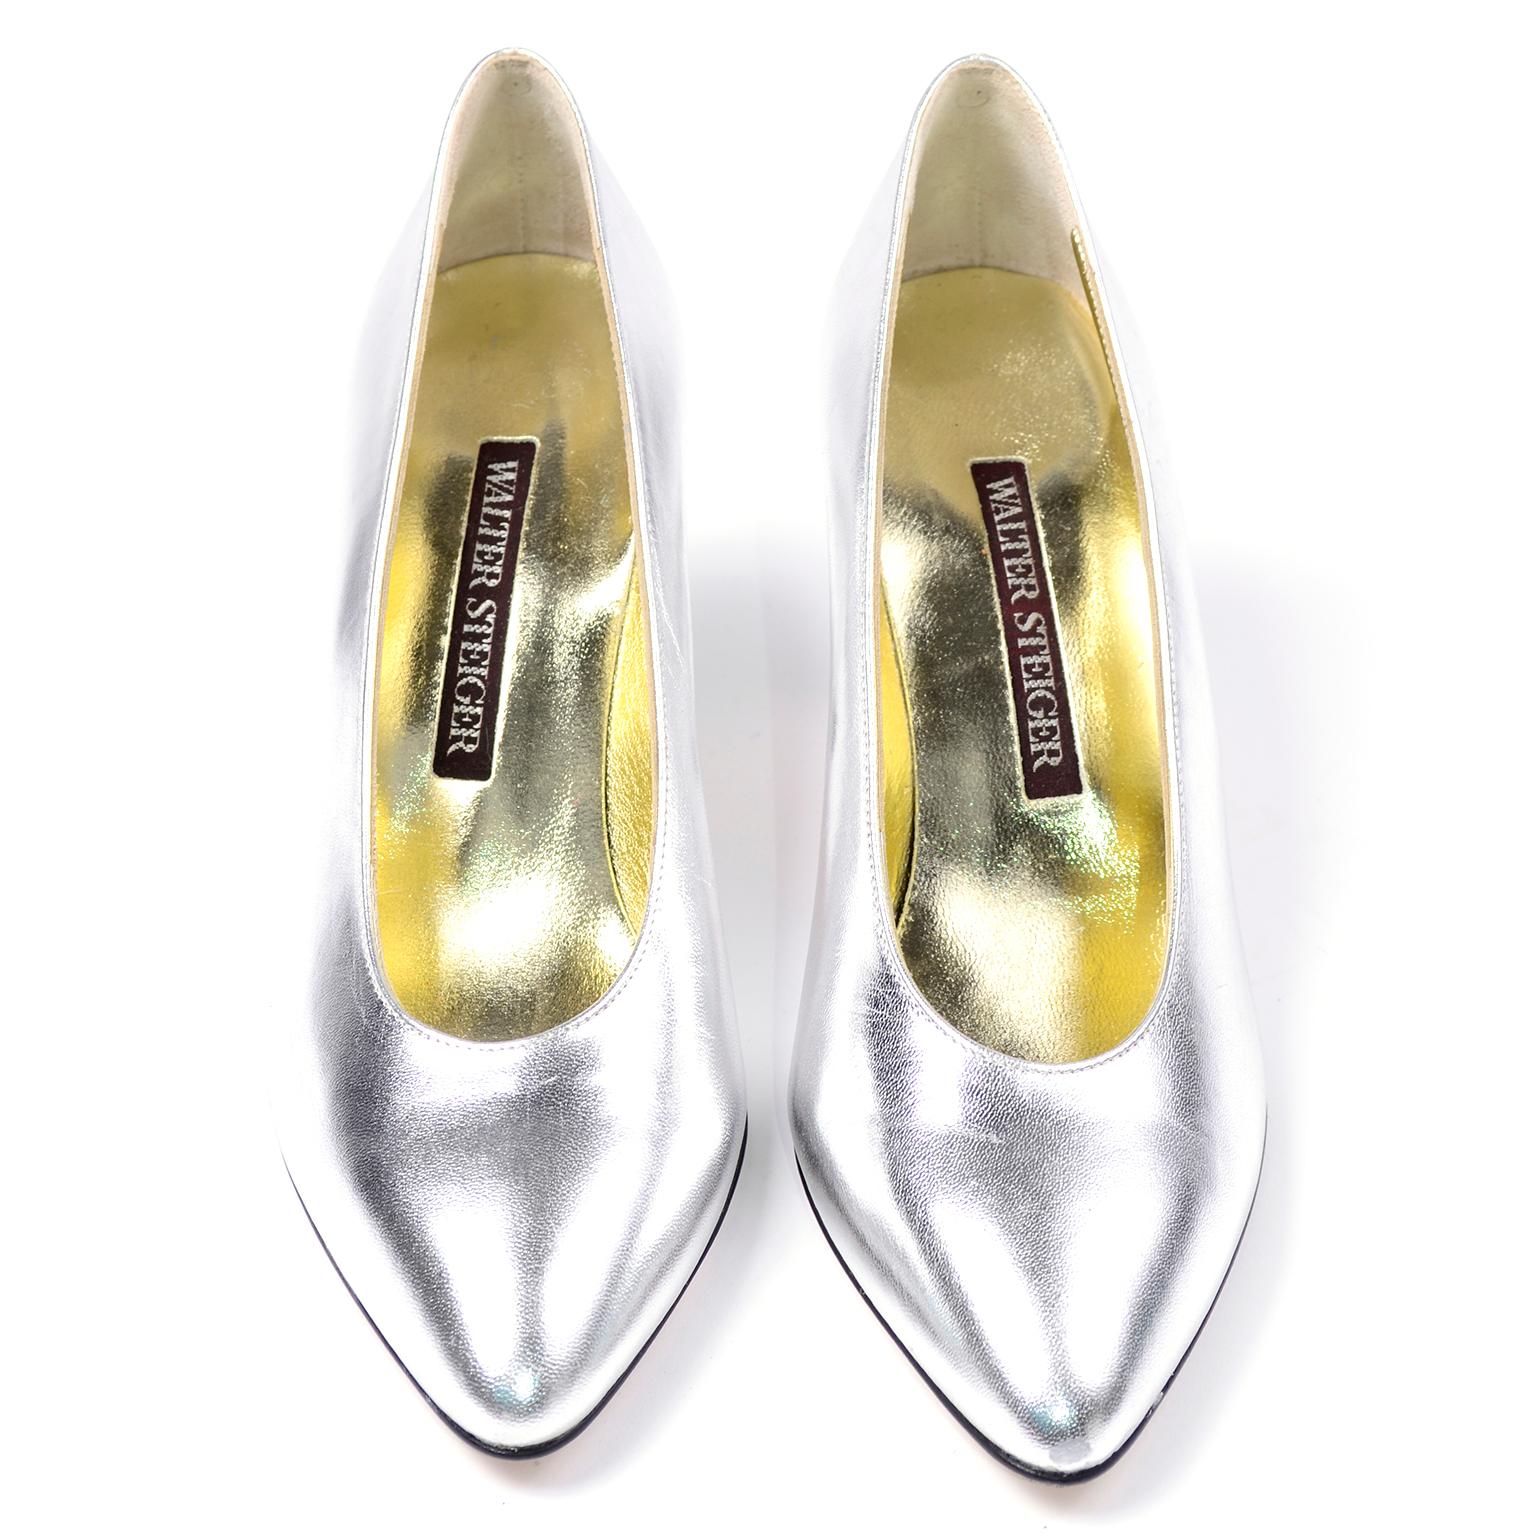 C'est une paire de chaussures Walter Steiger tellement amusante dans un fabuleux argent métallique. Parfaites pour les fêtes, ces chaussures argentées à bouts pointus  les talons ont des semelles et des tiges en cuir. Ces chaussures n'ont jamais été